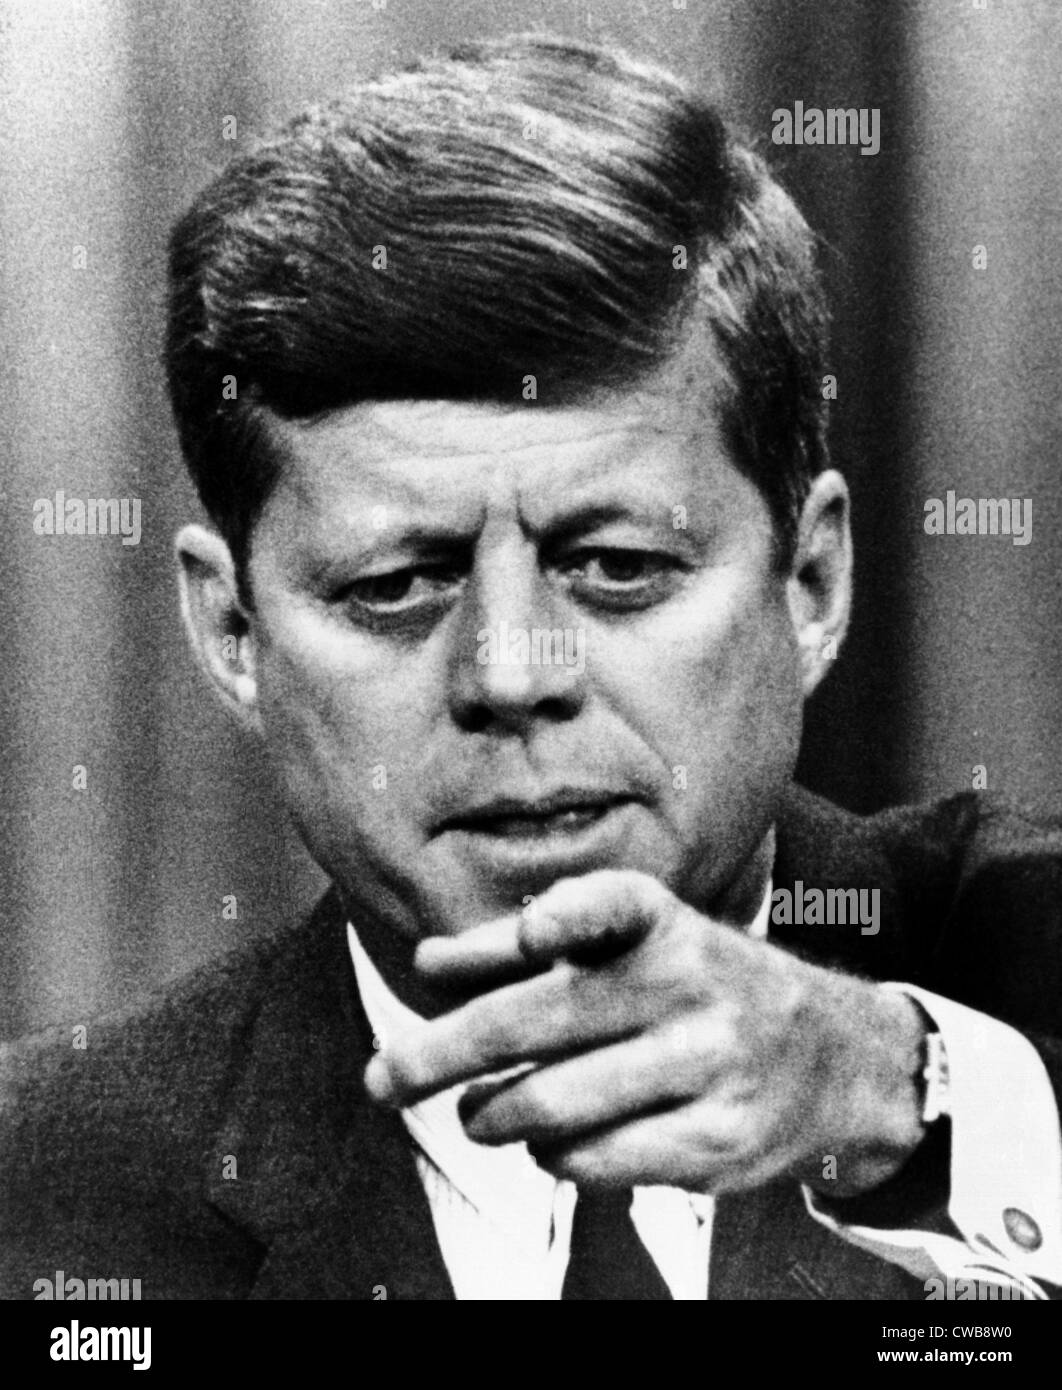 Le président Kennedy se dirigeant à un journaliste lors d'une conférence de presse. 11-14-1963 Avec la permission de : CSU Archives/Everett Collection Banque D'Images